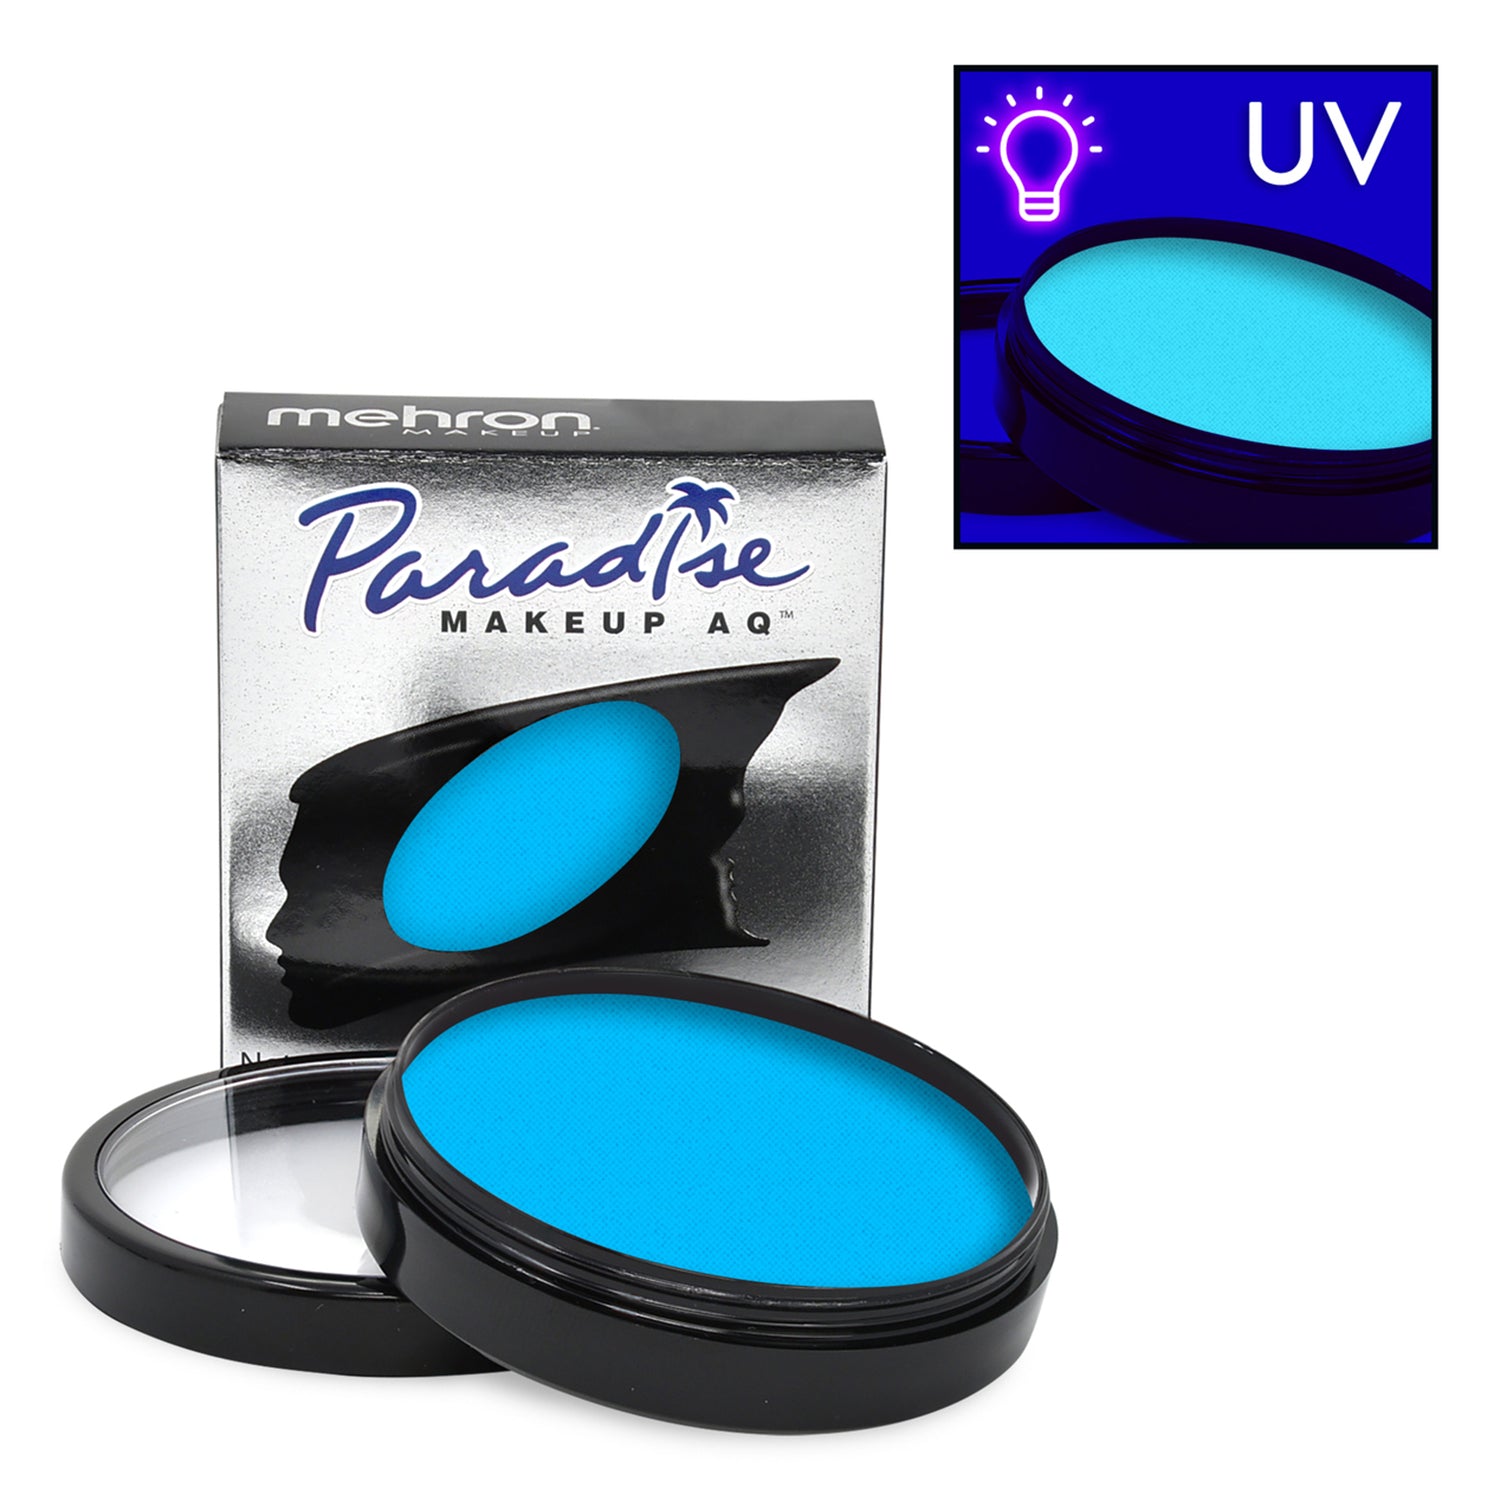 NEON UV - MEHRON PARADISE MAKEUP AQ - FACE & BODY PAINT - 1.4 OZ